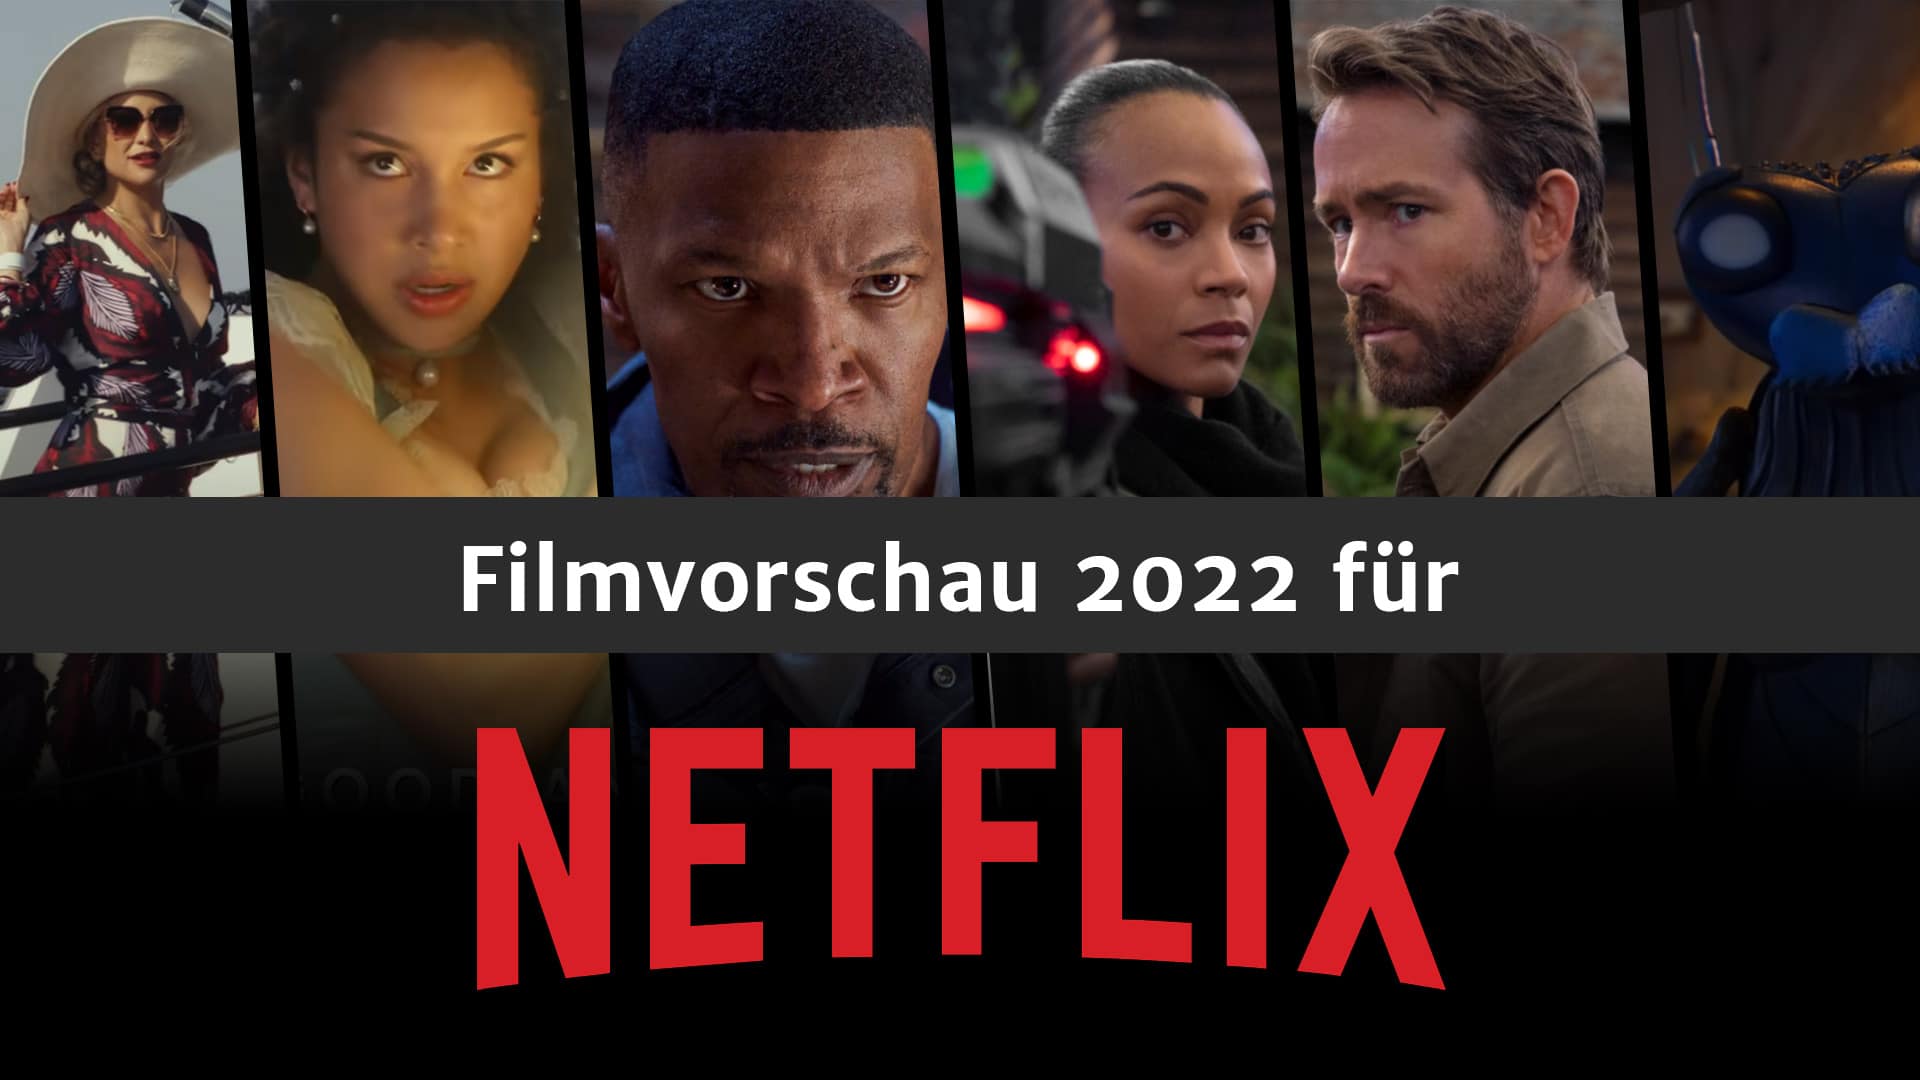 Netflix Filmvorschau 2022.